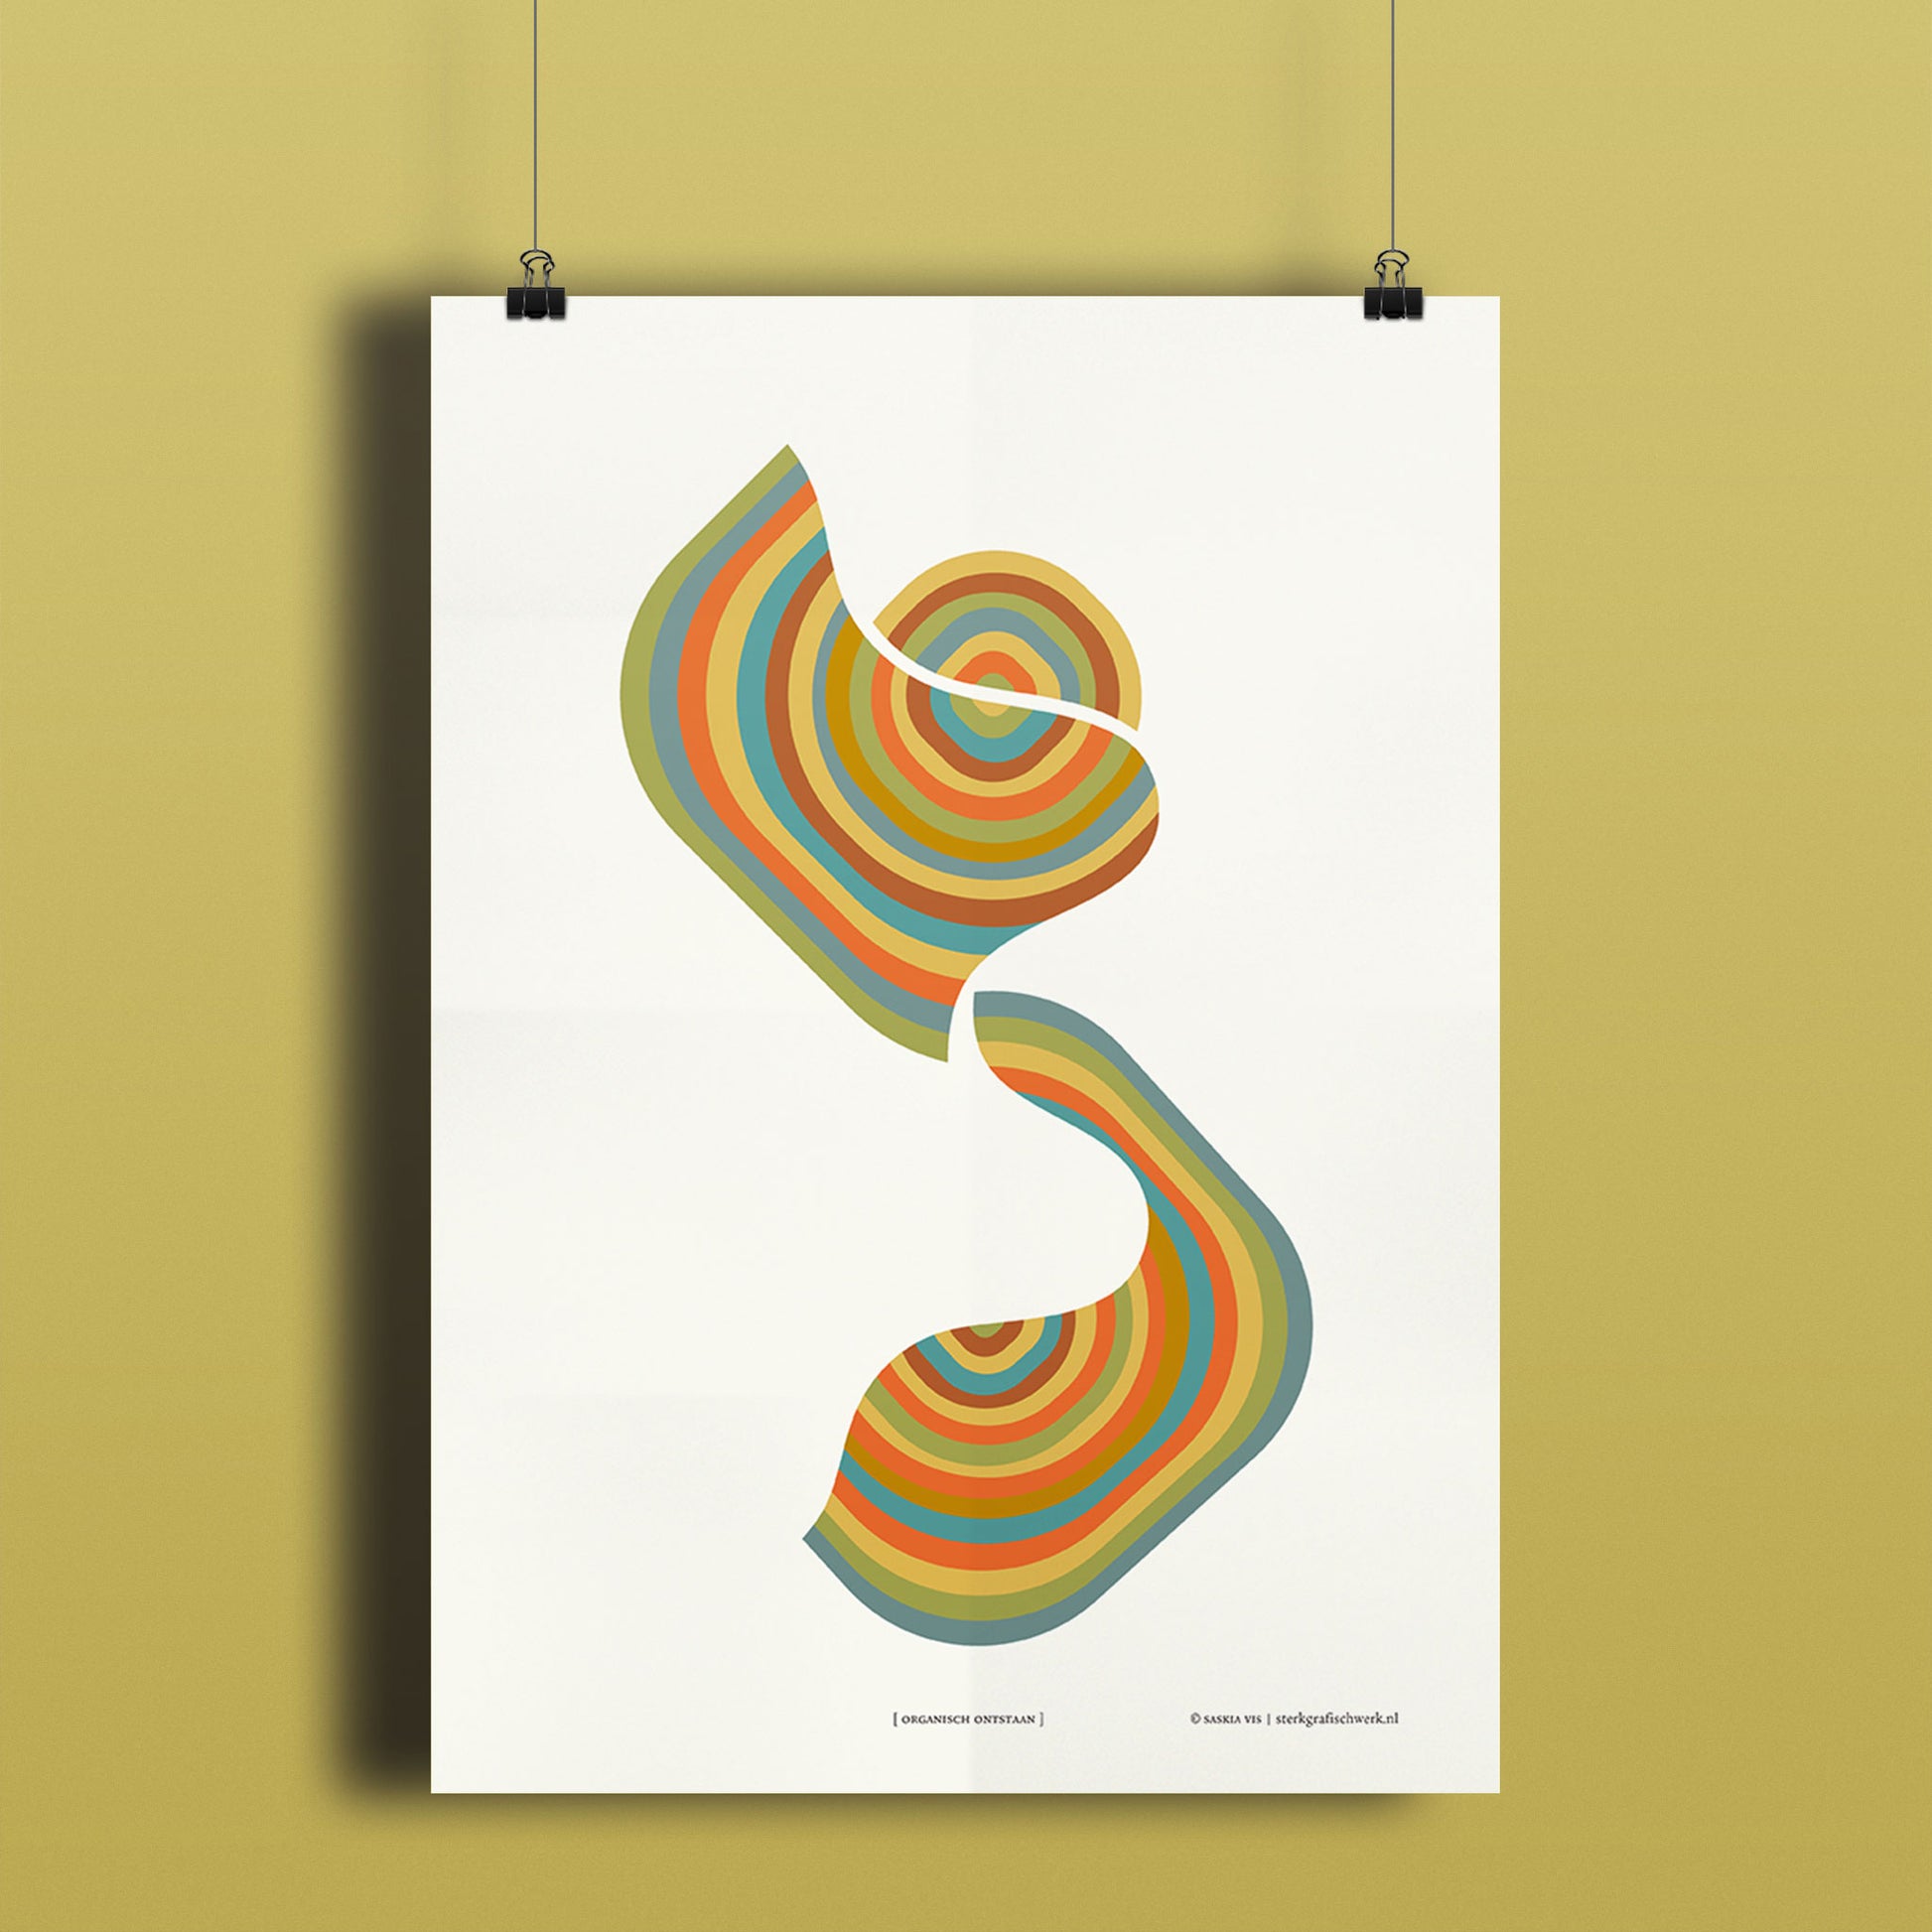 Productafbeelding, poster "organisch ontstaan", hangend aan een okergeel gekleurde wand, een overzichtsfoto